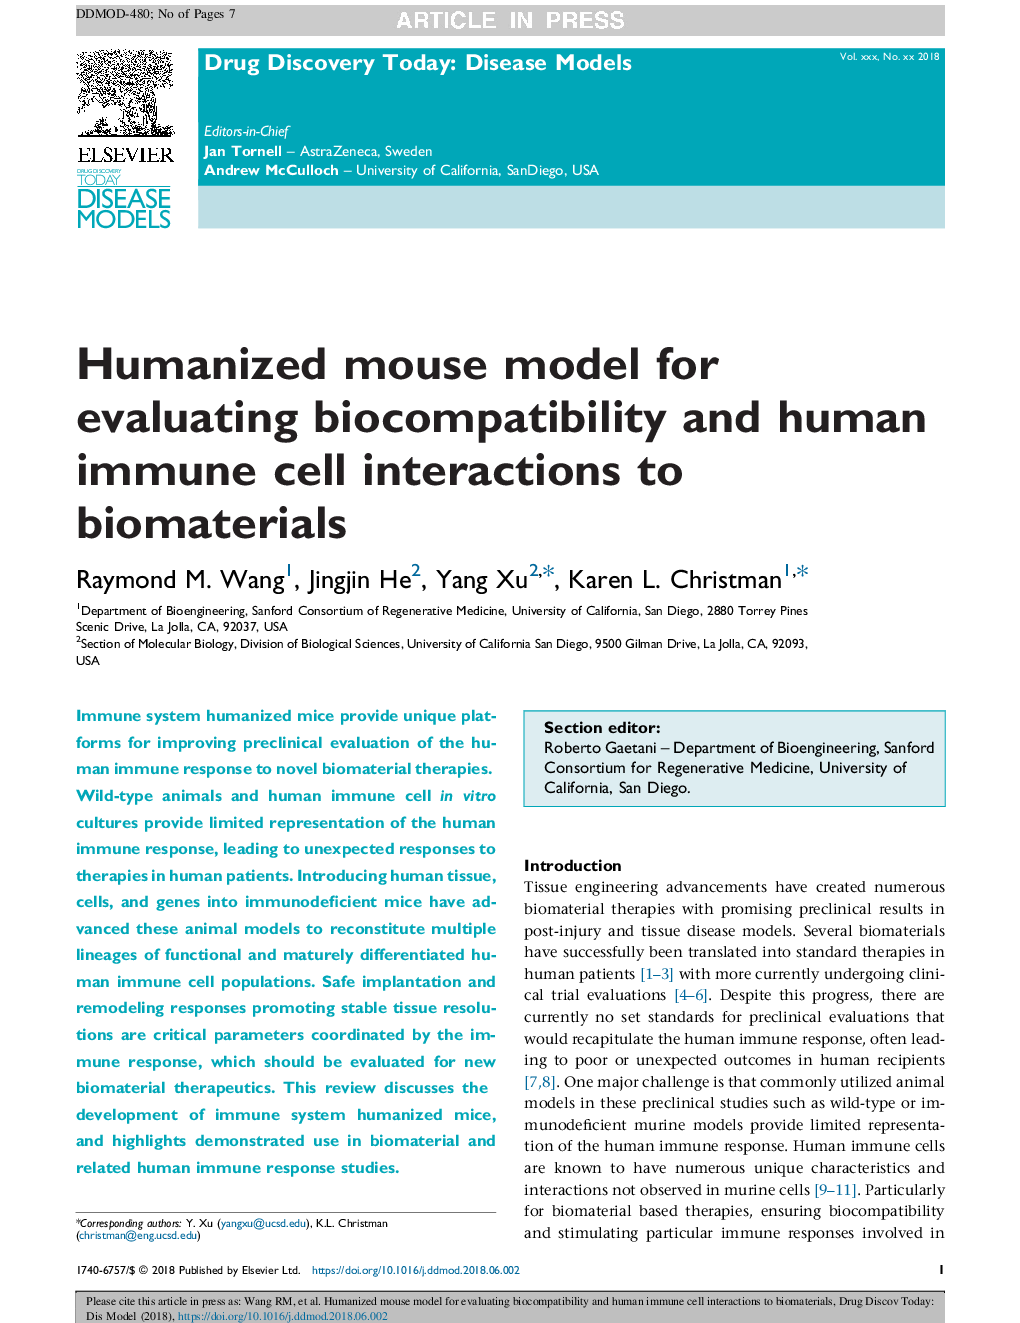 مدل موش انسانی برای ارزیابی سازگاری بیولوژیک و تعاملات سلول های ایمنی بدن با مواد بیولوژیکی 